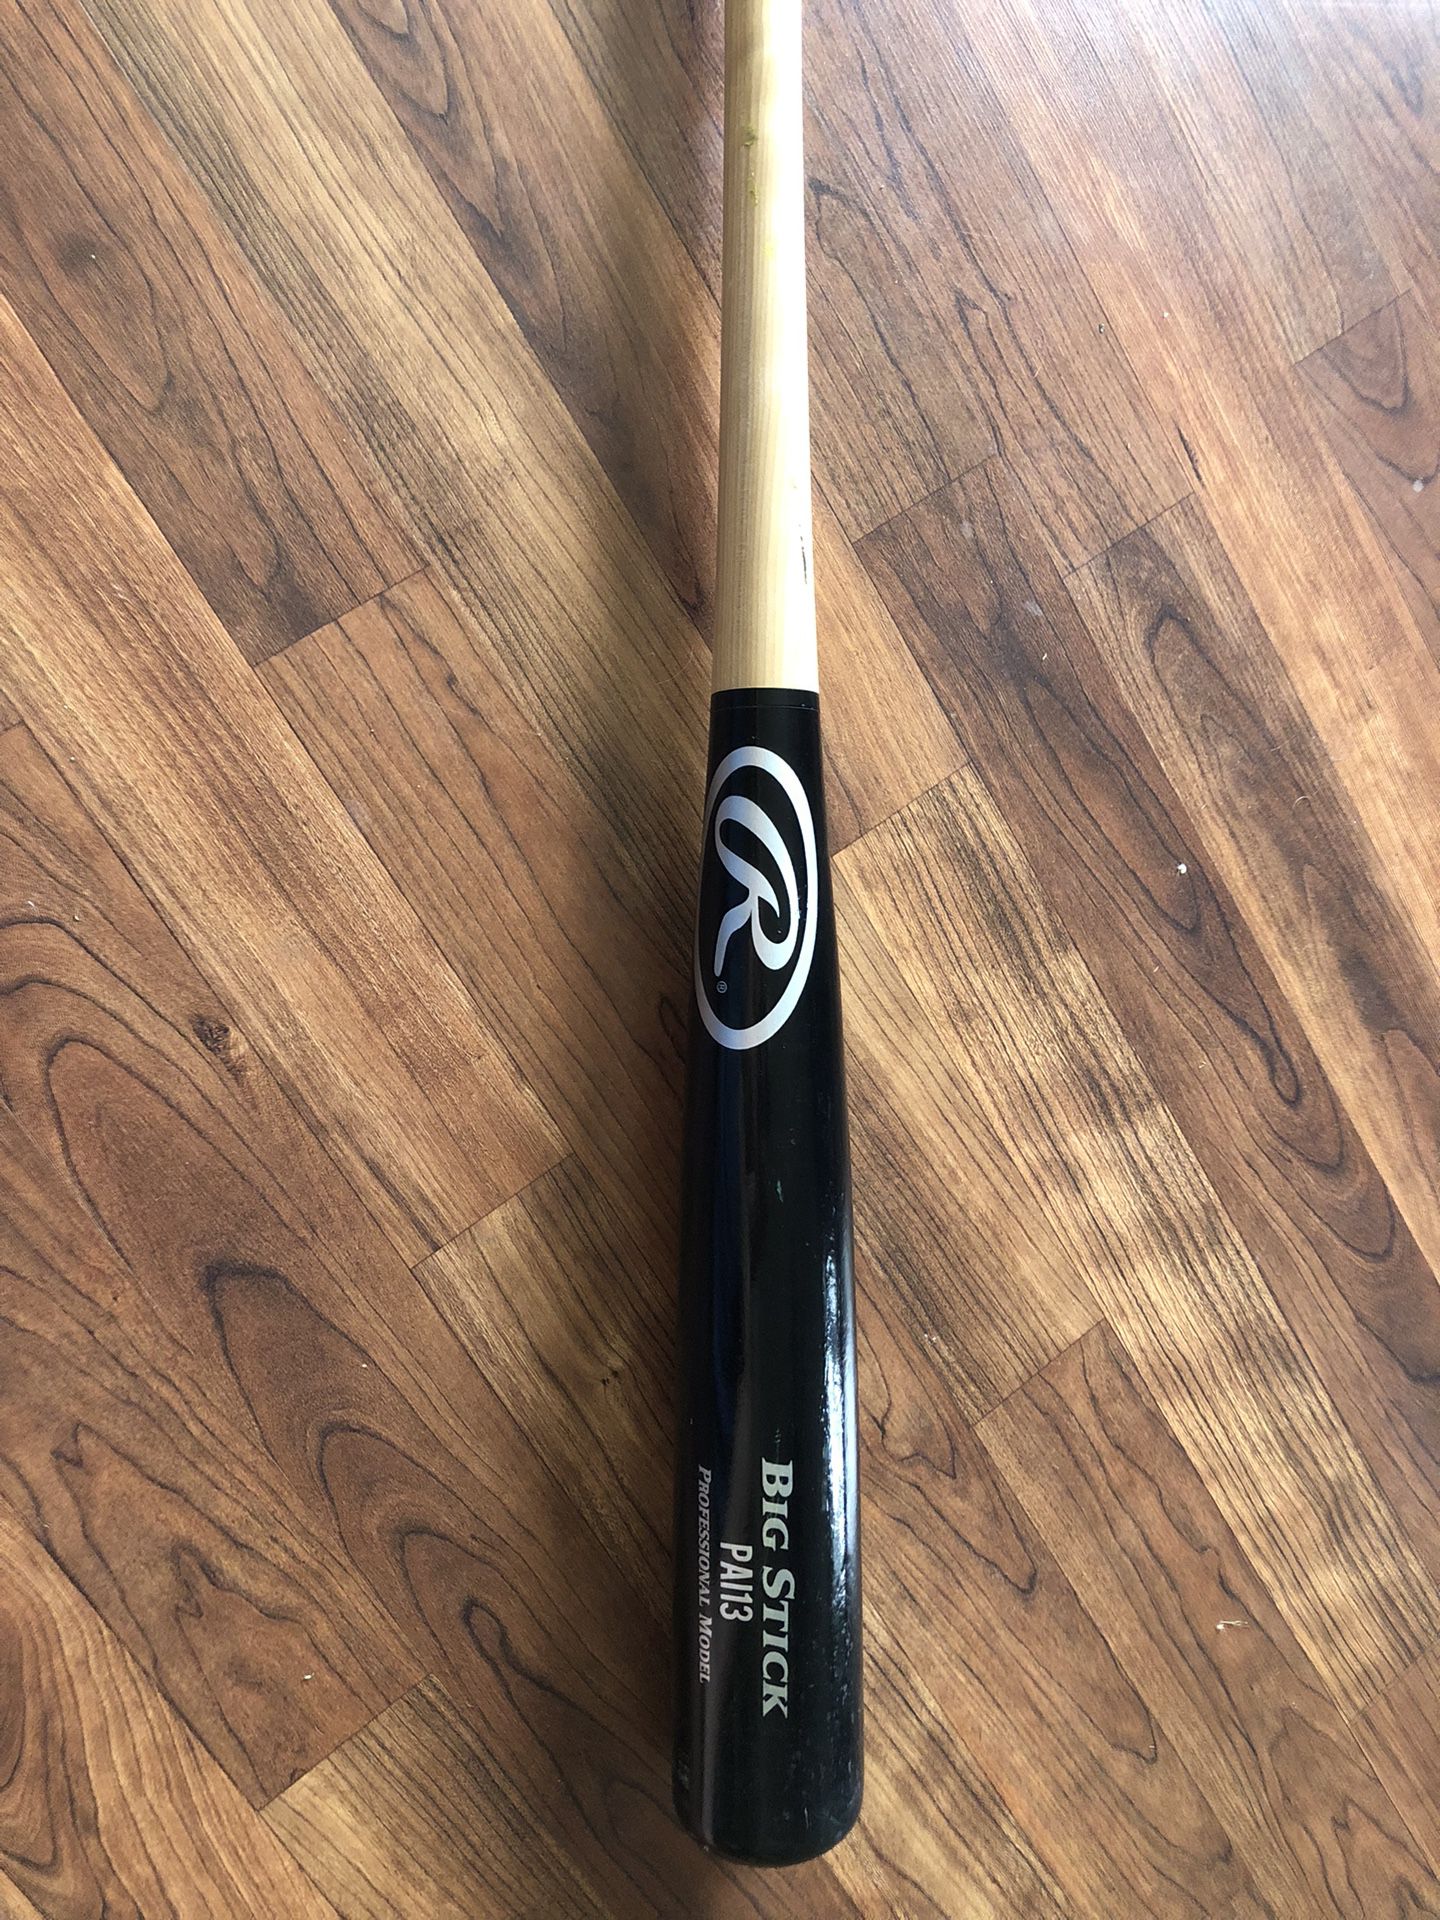 Rawlings Wood Baseball Bat 33” Never Used